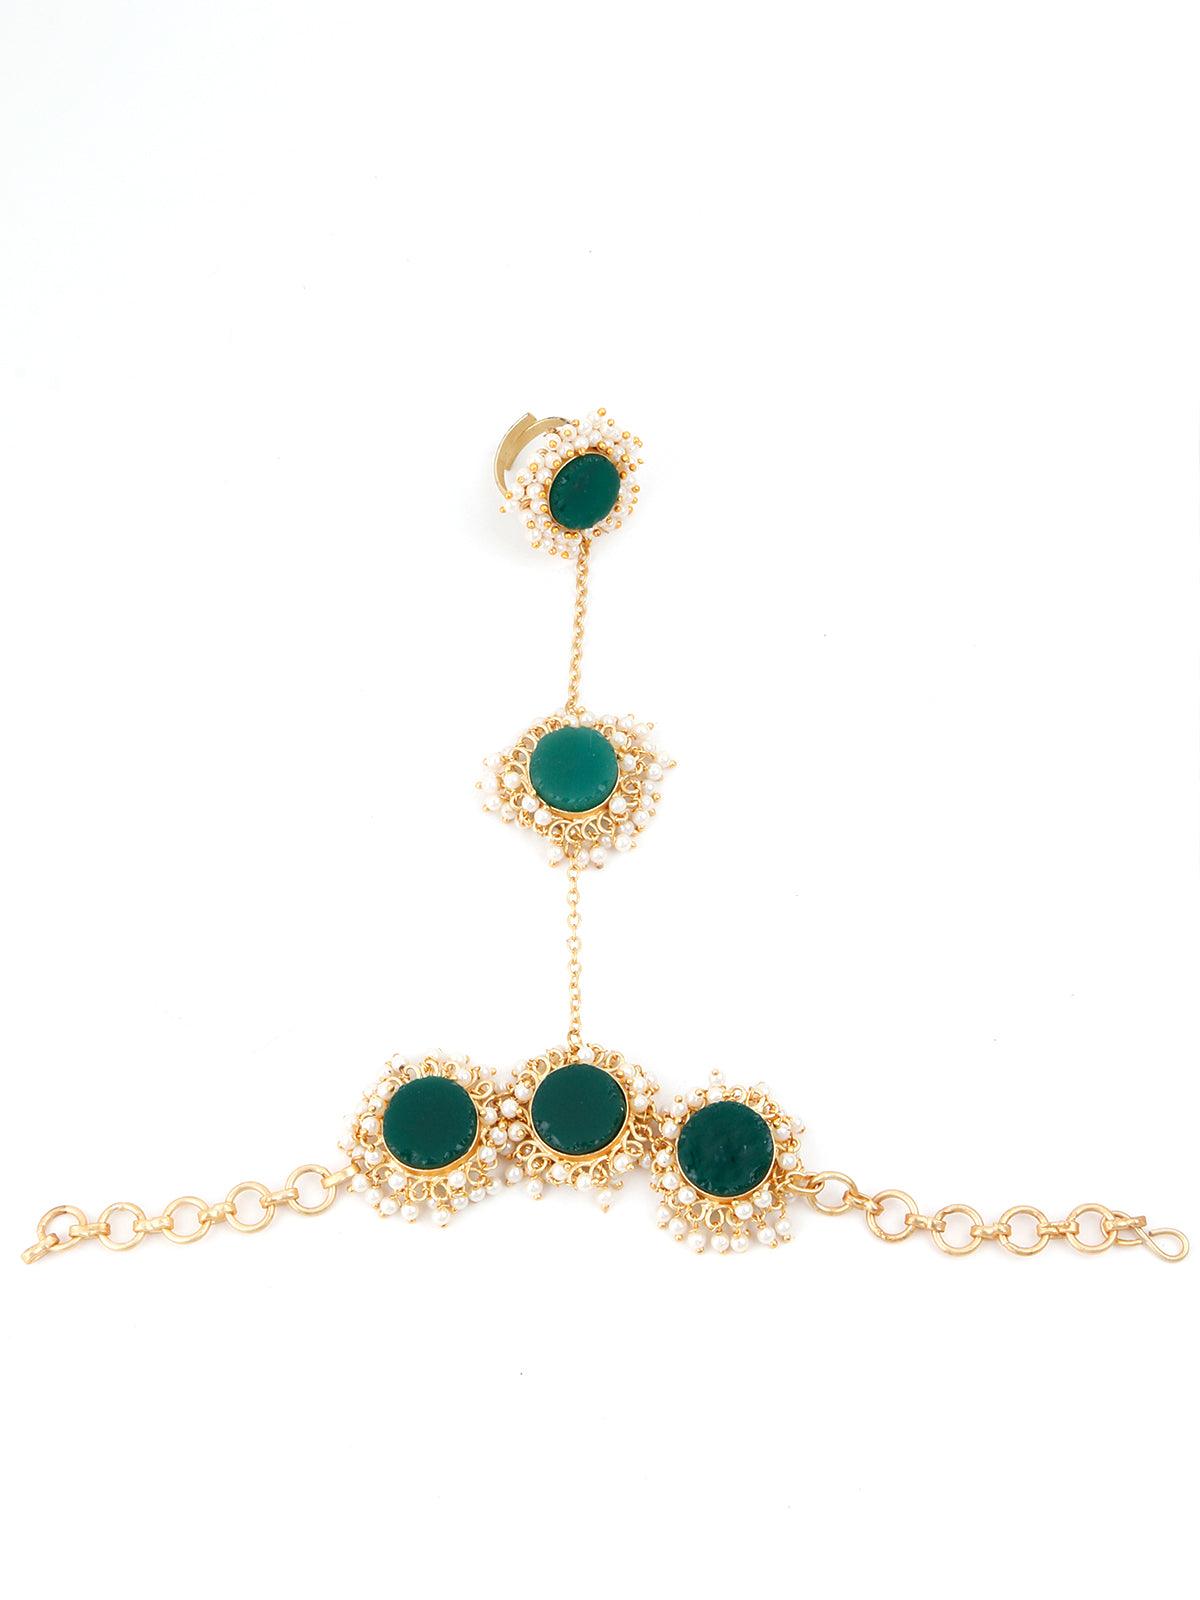 Women's Perfect Gold Tone Green Druzy-Pearl Bracelet - Odette